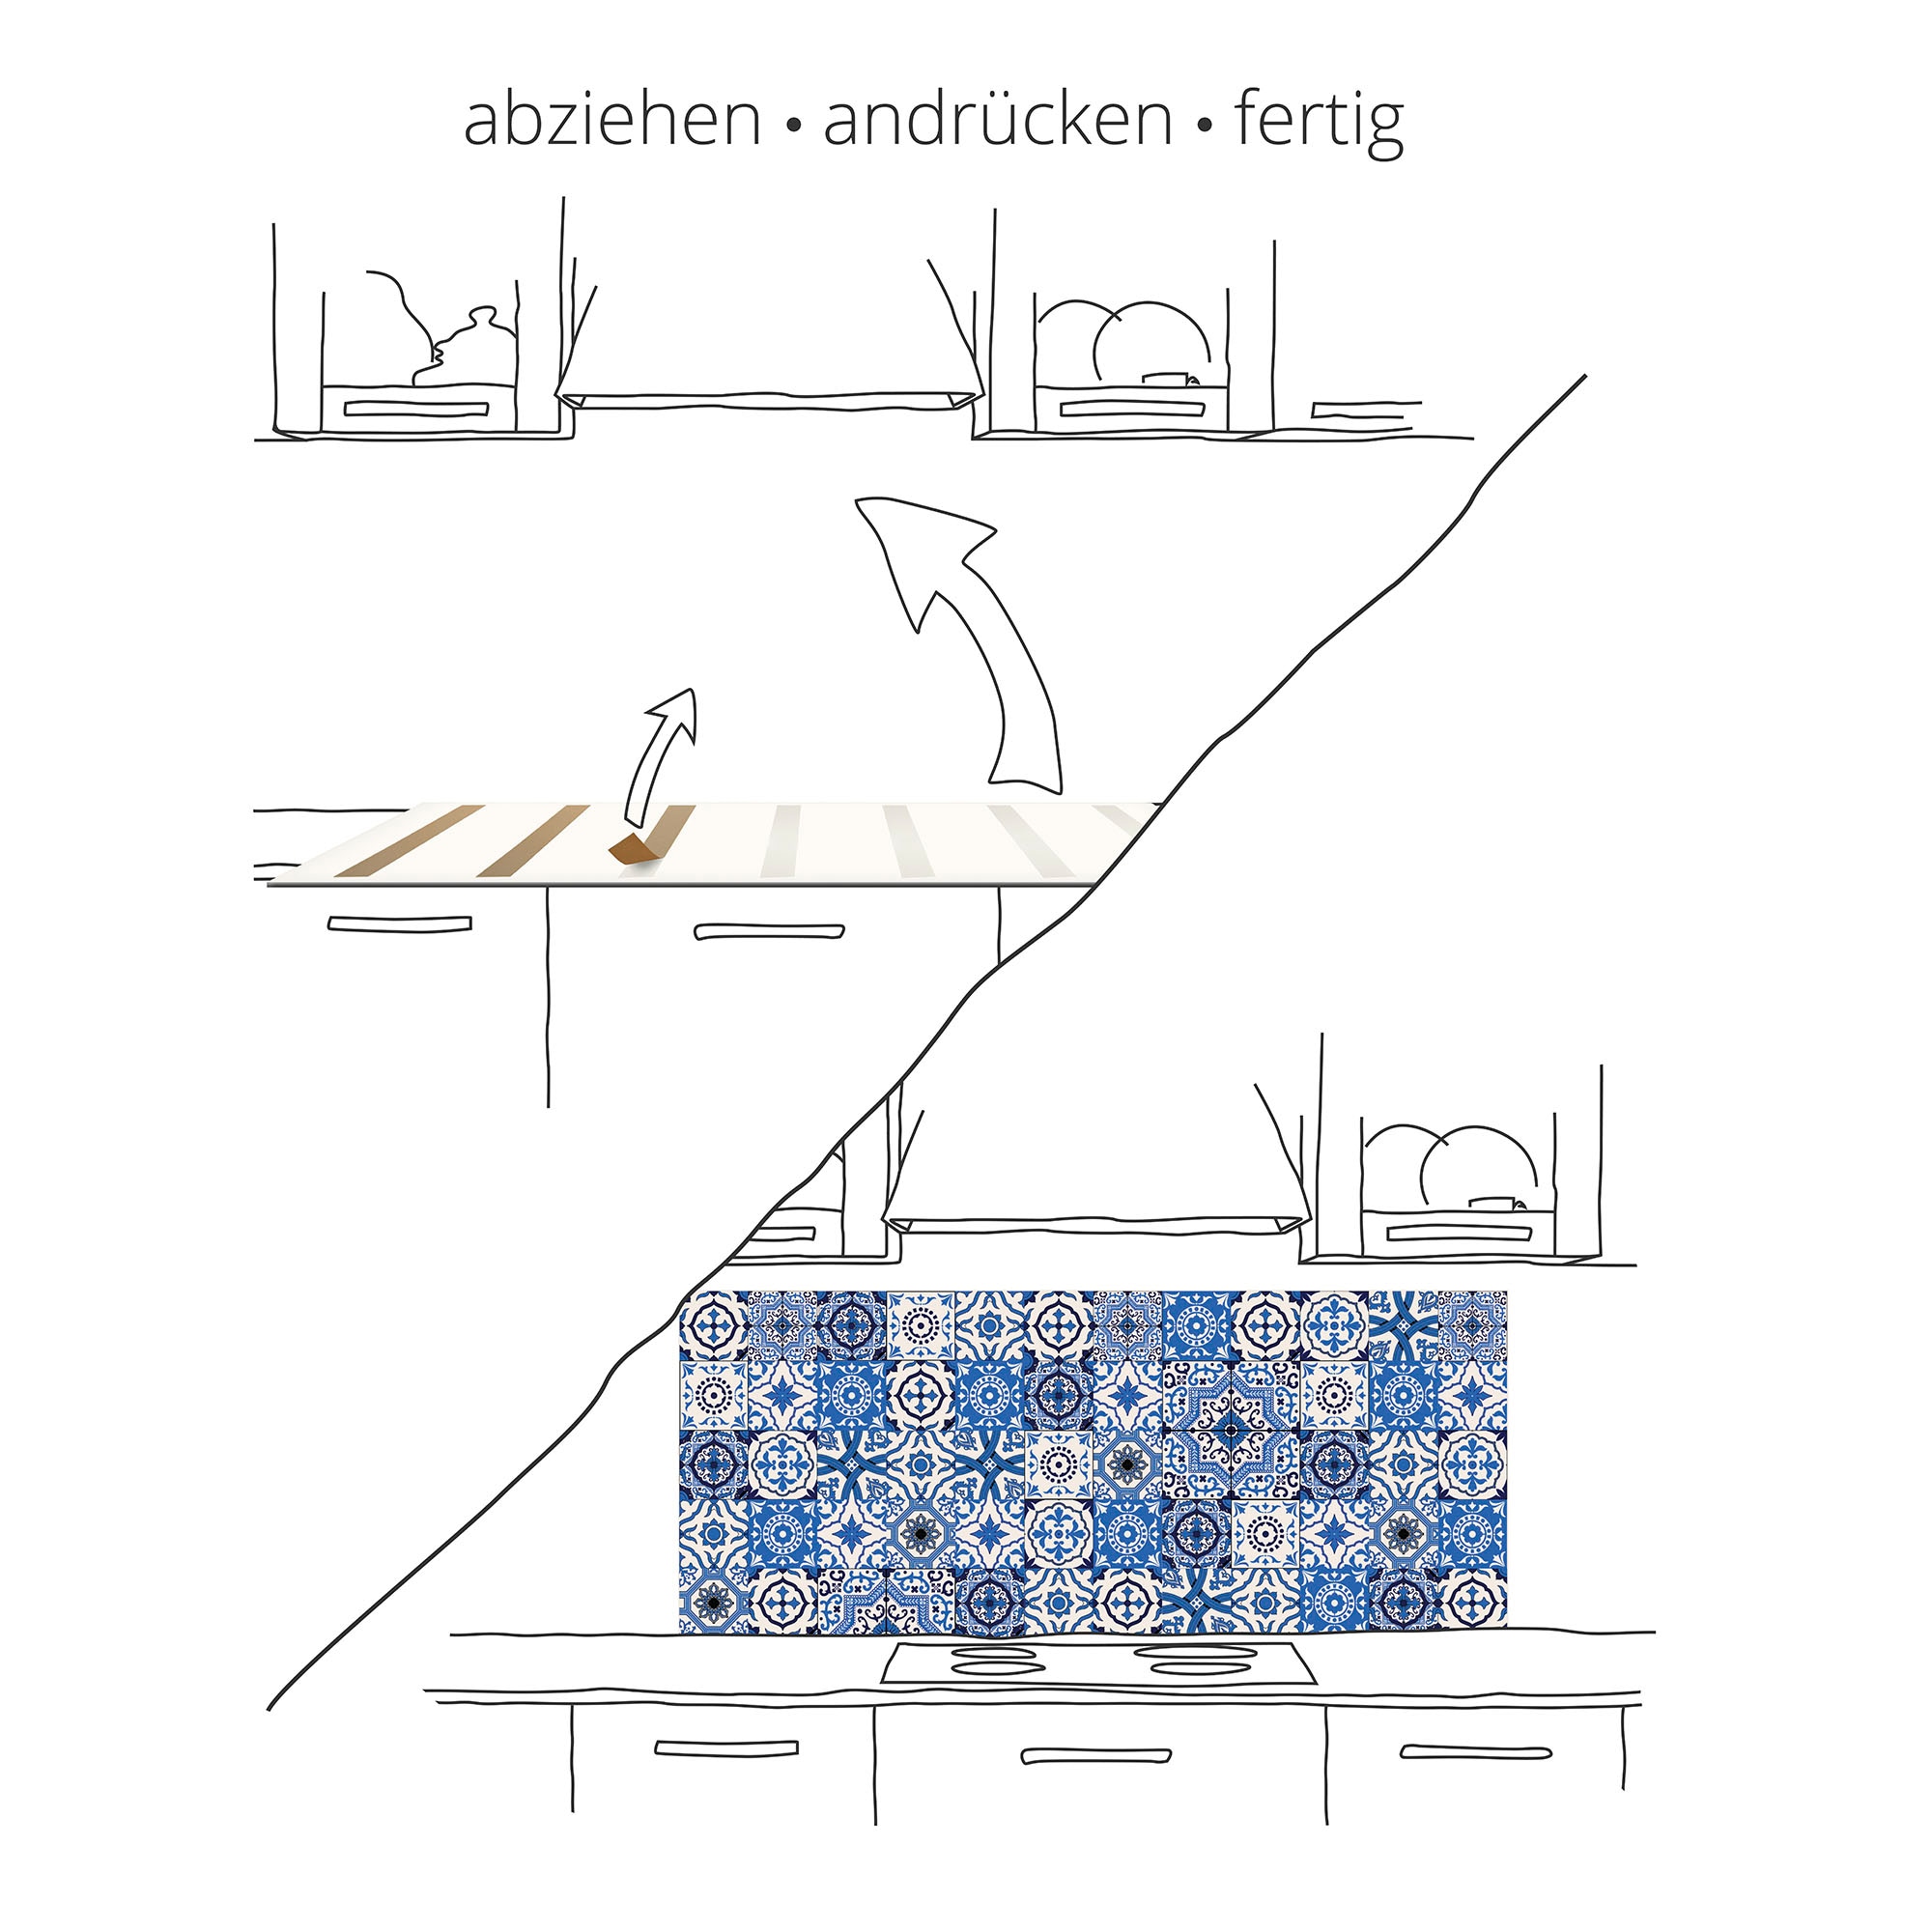 Artland Küchenrückwand »Feuer 2 - Flammen«, (1 tlg.), Alu Spritzschutz mit Klebeband, einfache Montage